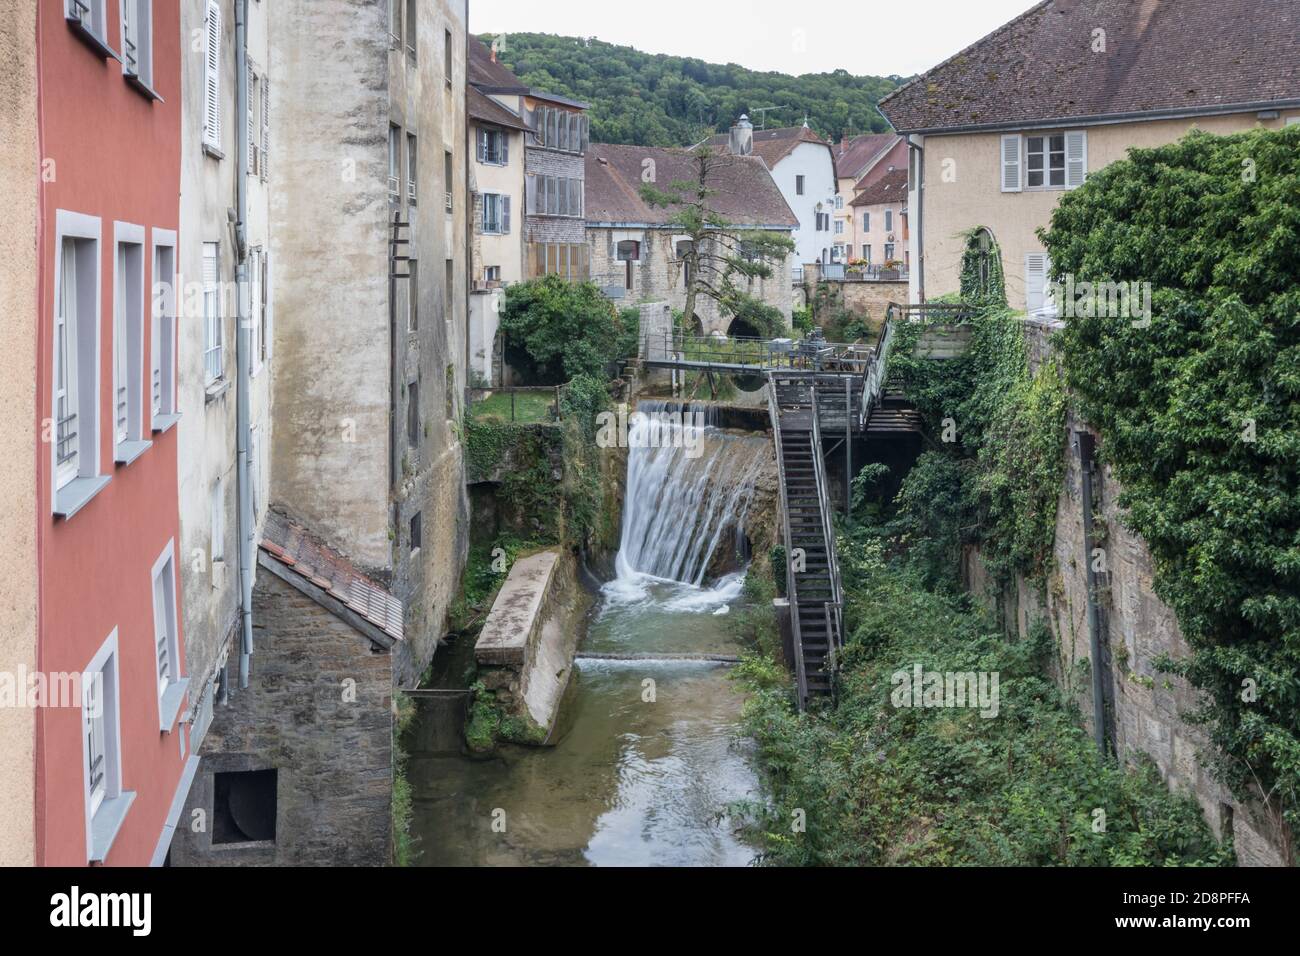 La Cucroissance et son barrage dans le village historique d'Arbois, Jura, France Banque D'Images